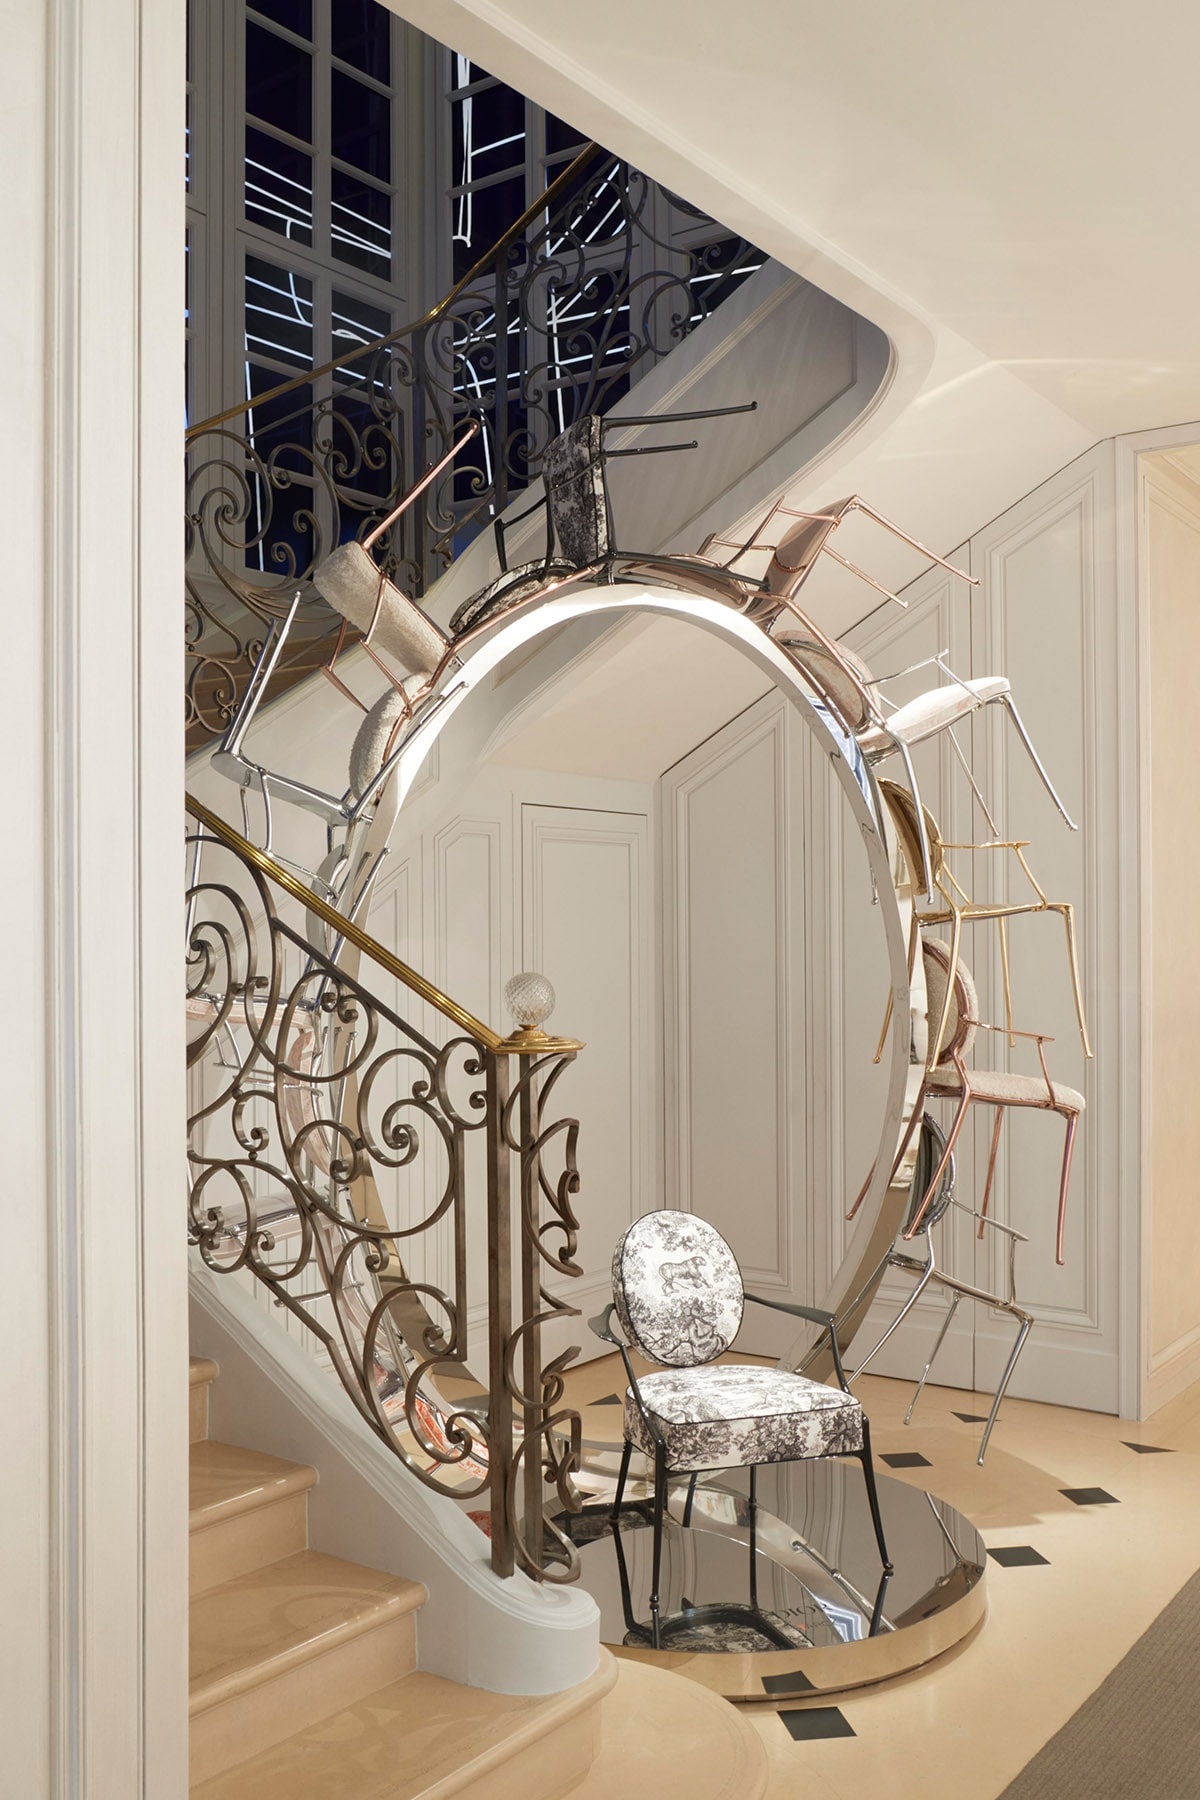 近賞 Philippe Starck 設計 Monsieur Dior 扶手椅與家飾系列